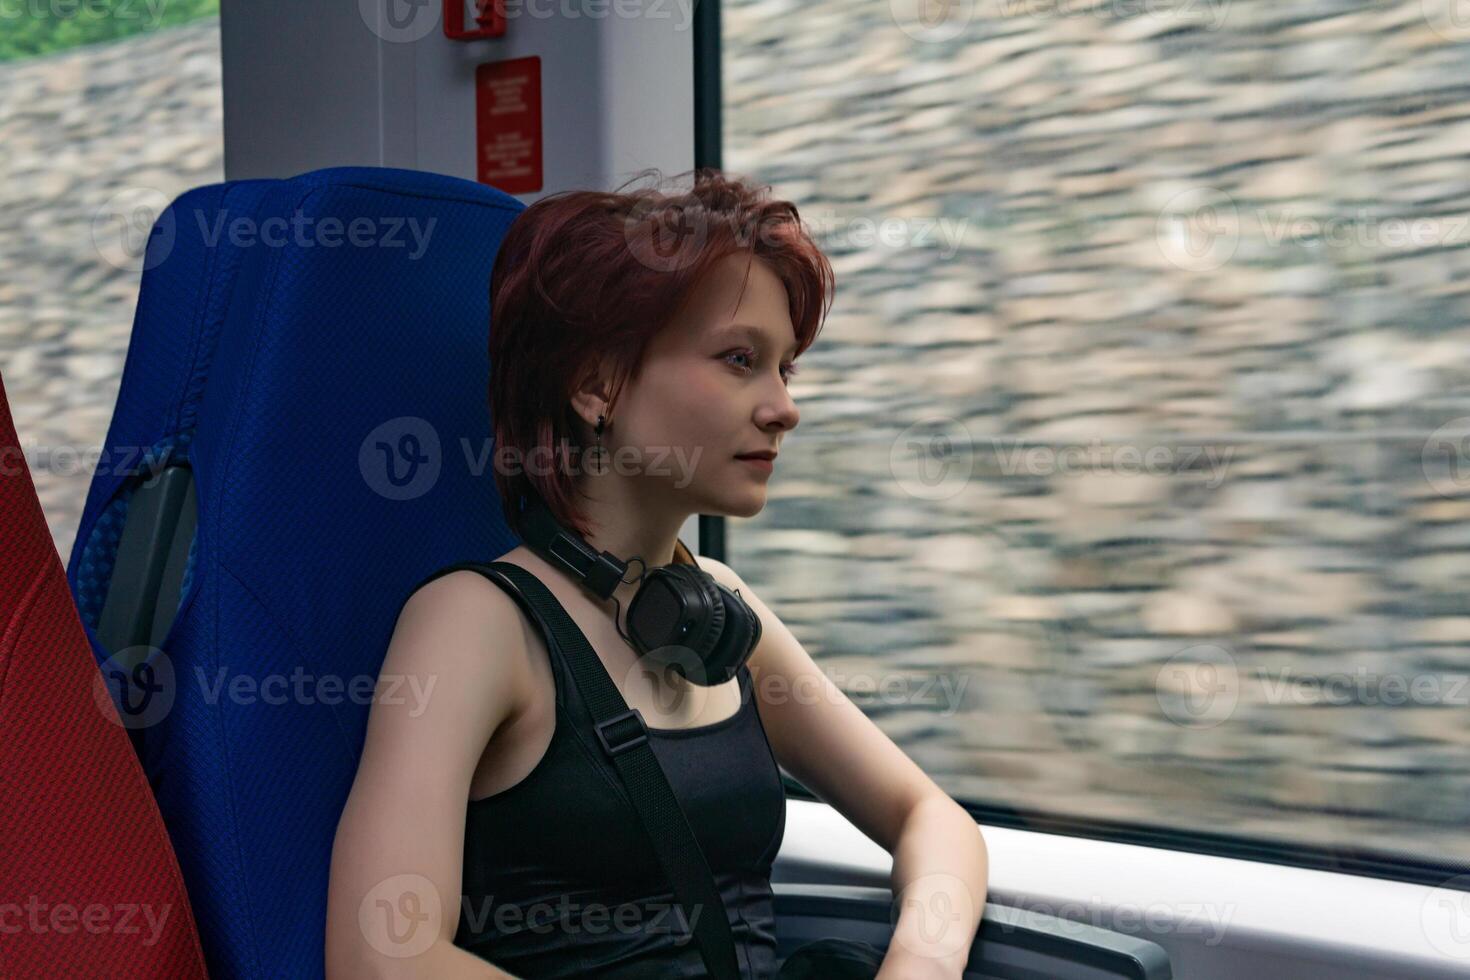 jong vrouw ritten in een in beweging buitenwijk trein, buiten de venster - een schanskorf muur wazig in beweging foto